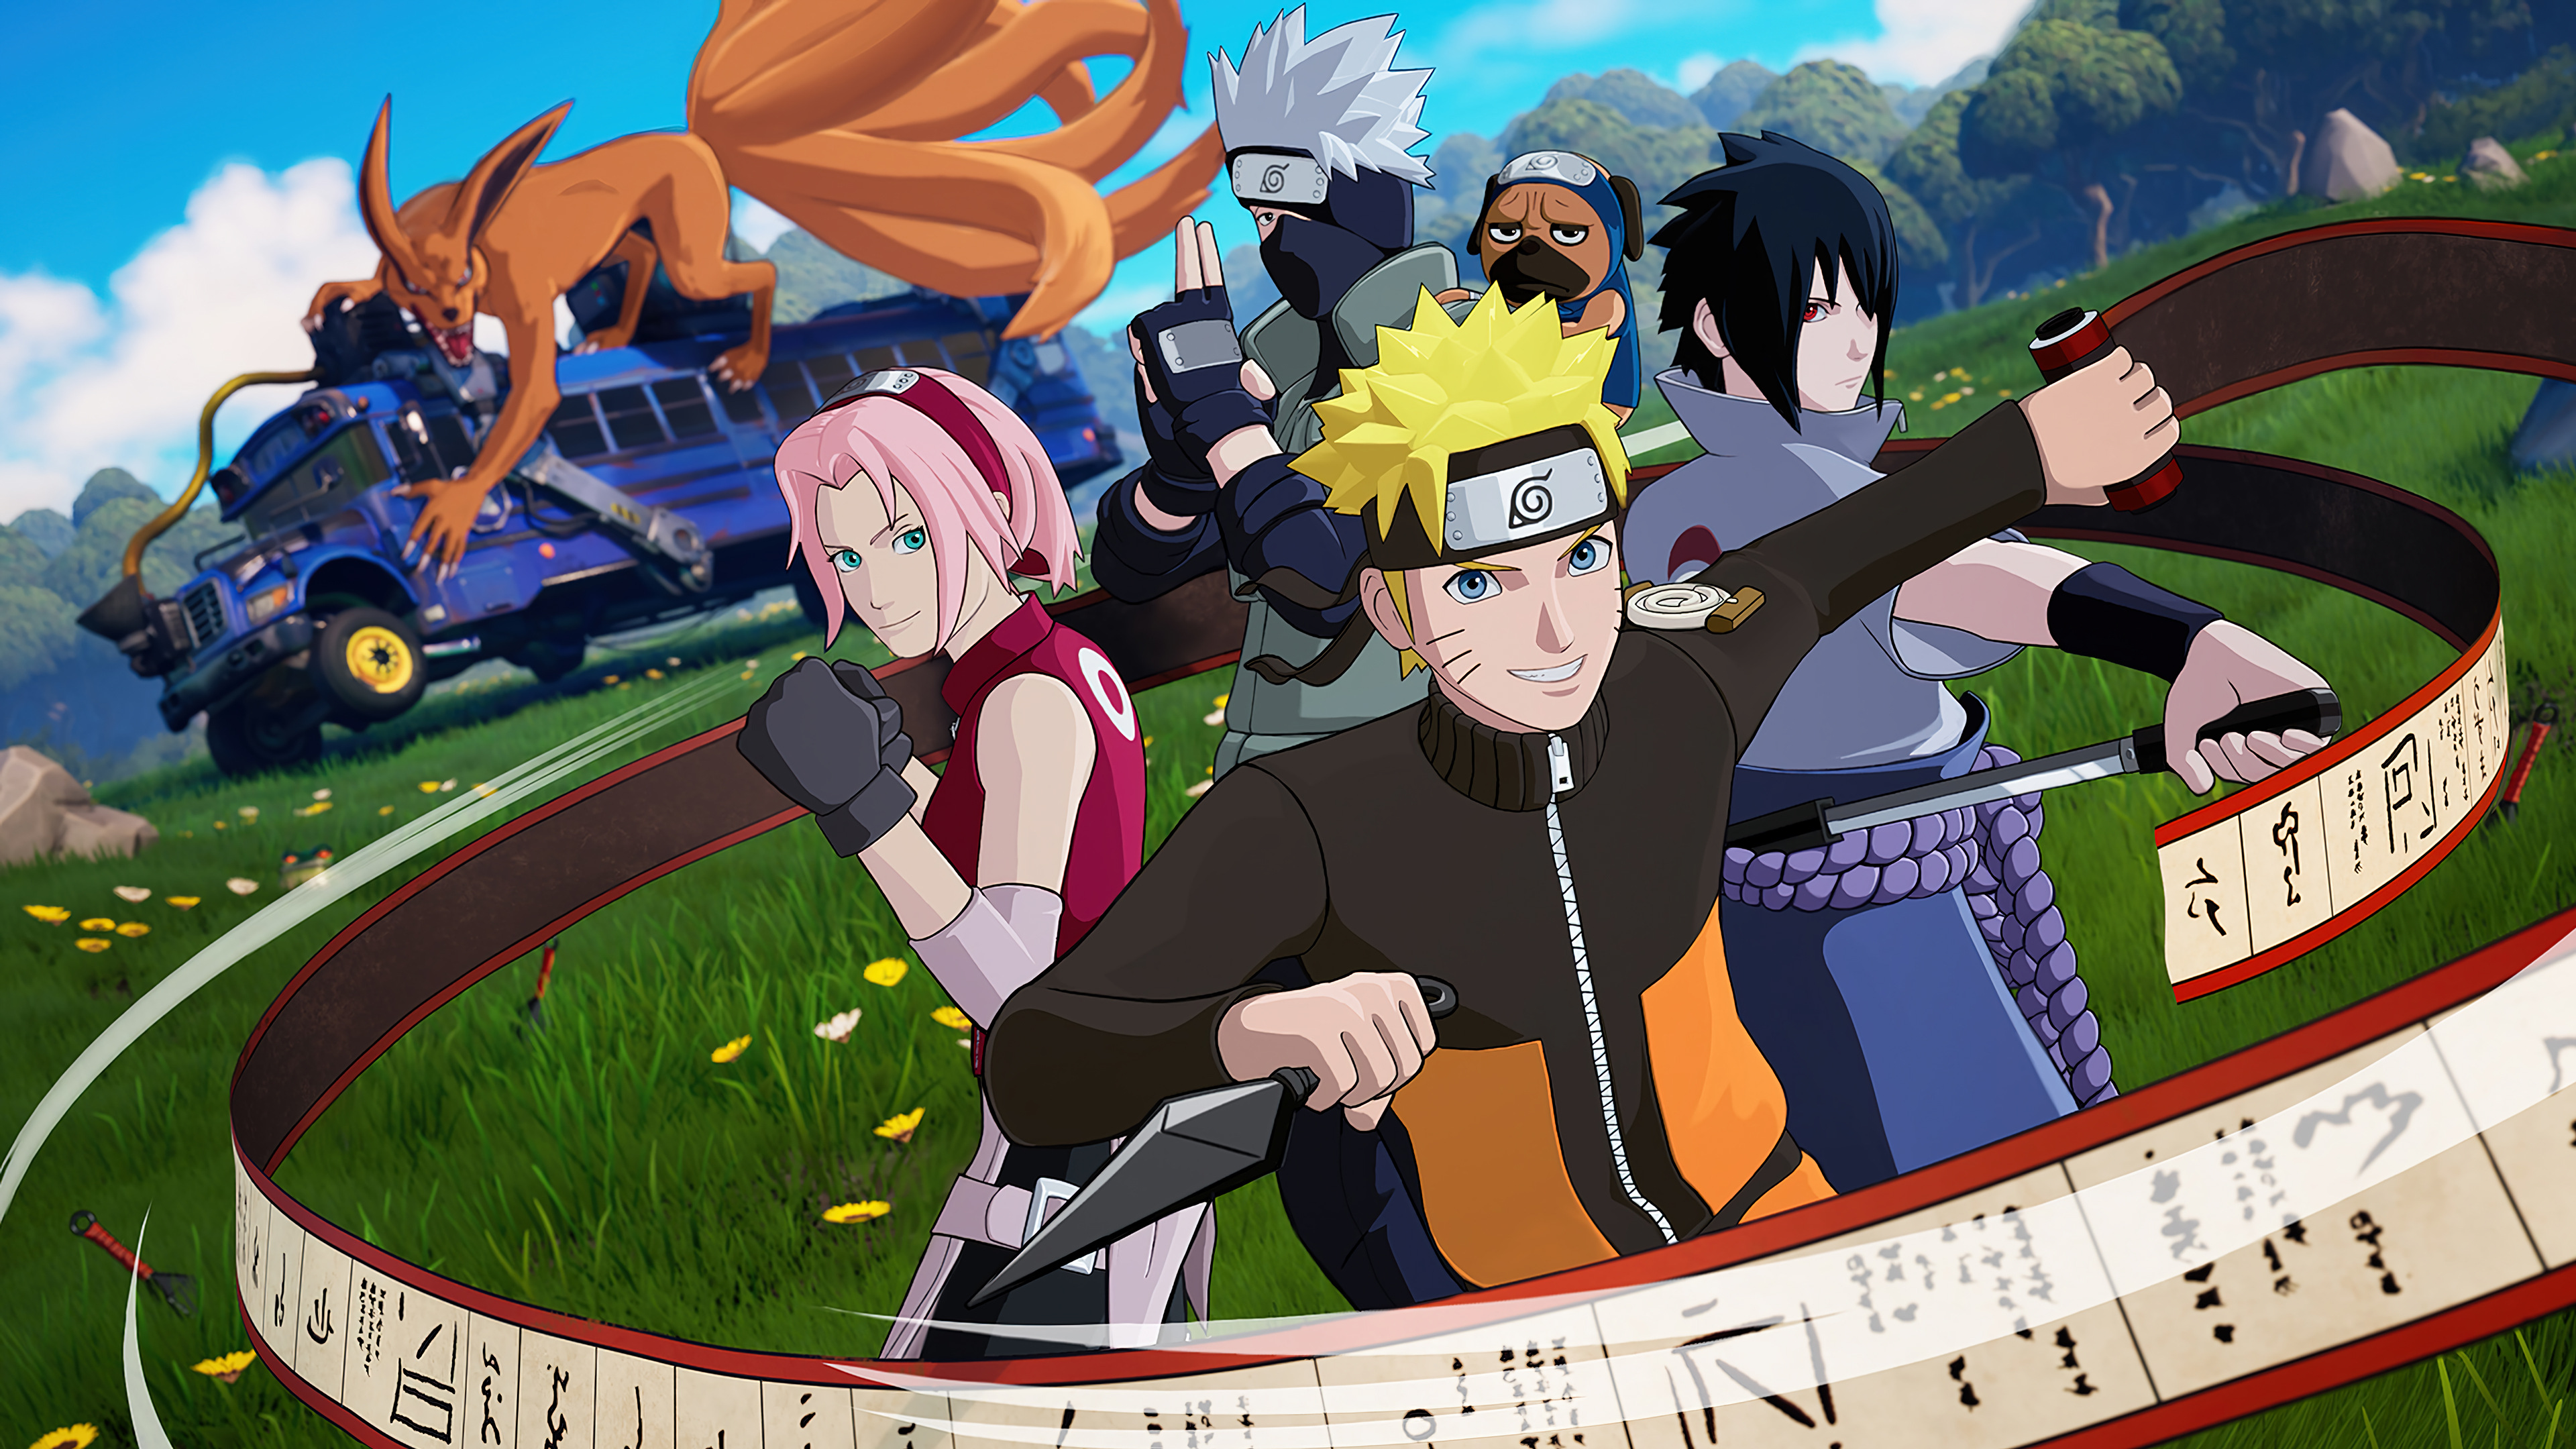 Tải về miễn phí Fortnite Naruto Sasuke Sakura Kakashi Kurama - Fan hâm mộ của Fortnite và Naruto không thể bỏ qua bộ sưu tập ảnh độc đáo này. Mang những nhân vật yêu thích như Naruto, Sasuke, Sakura, Kurama và Kakashi vào thế giới Fortnite và sáng tạo những trận chiến thần kỳ. Tải ngay để khám phá thế giới mới!